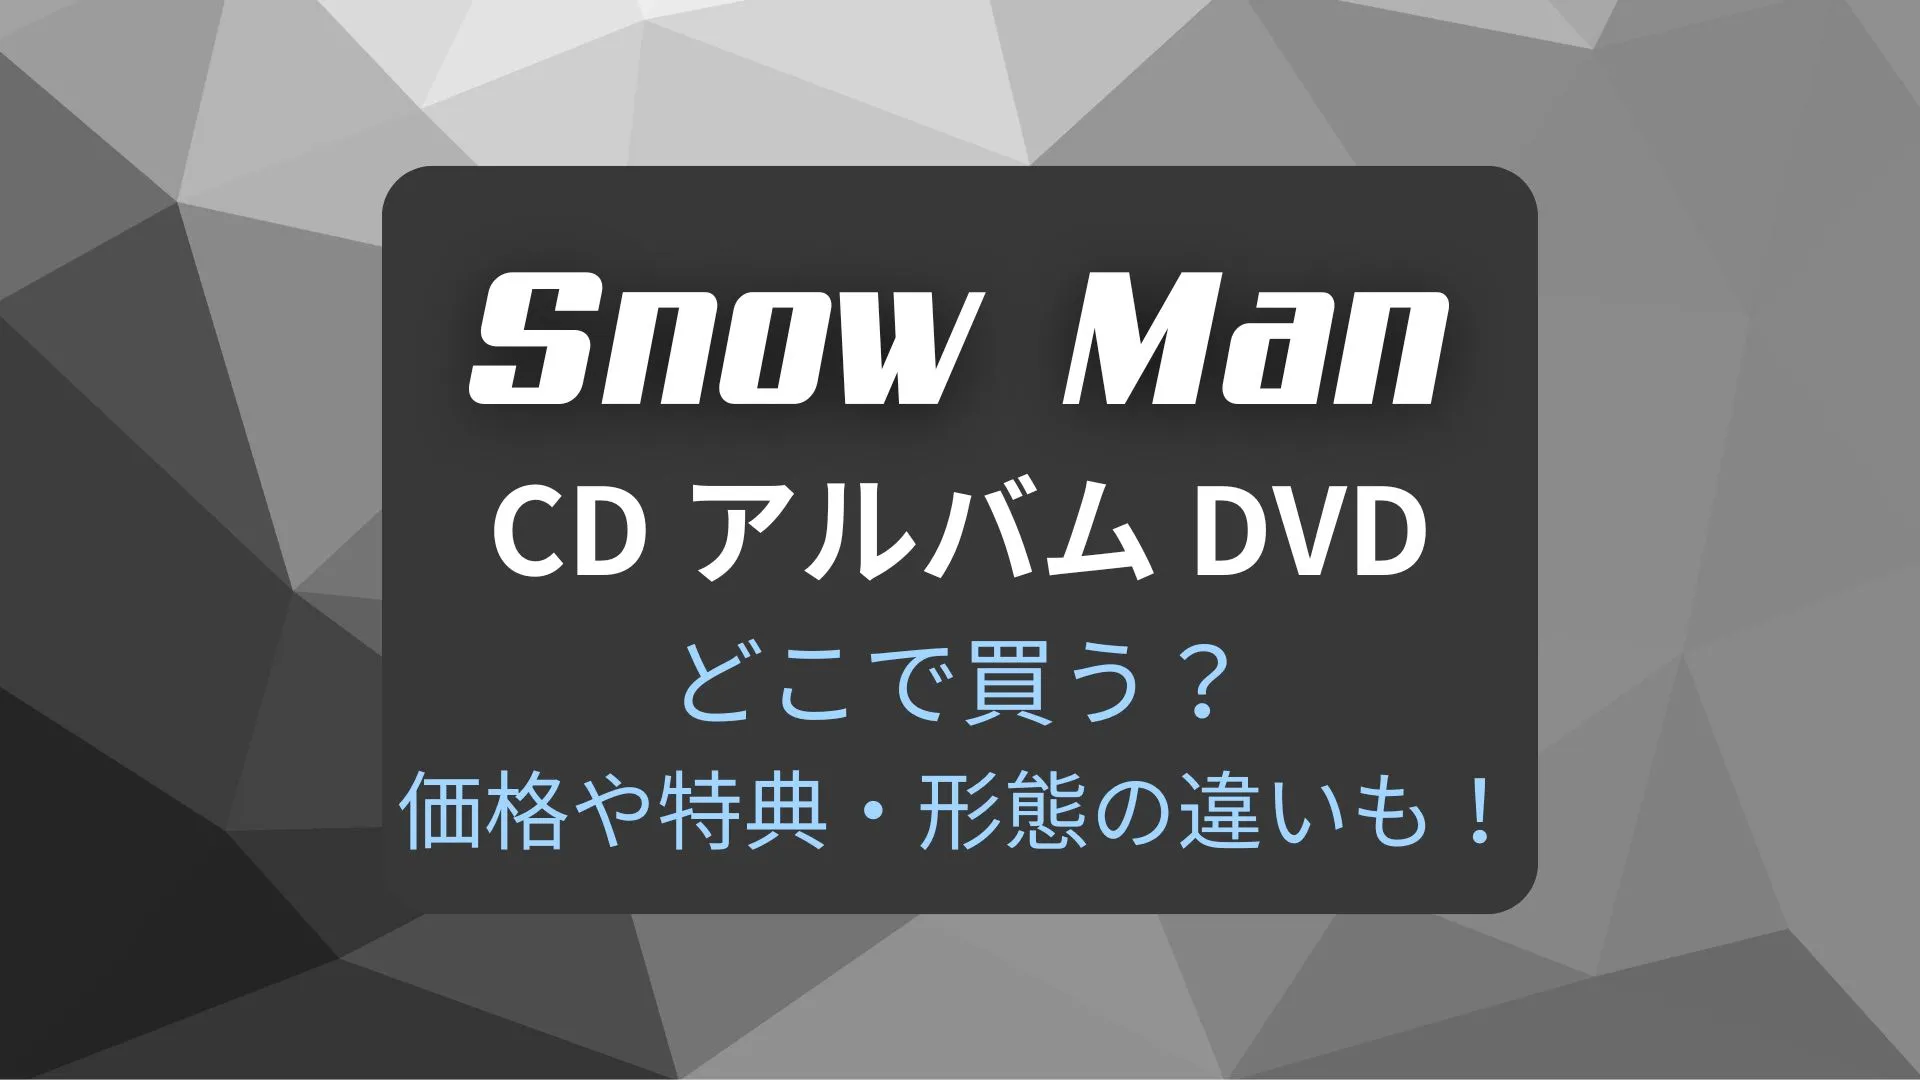 Snow ManCDアルバムDVDどこで買う？